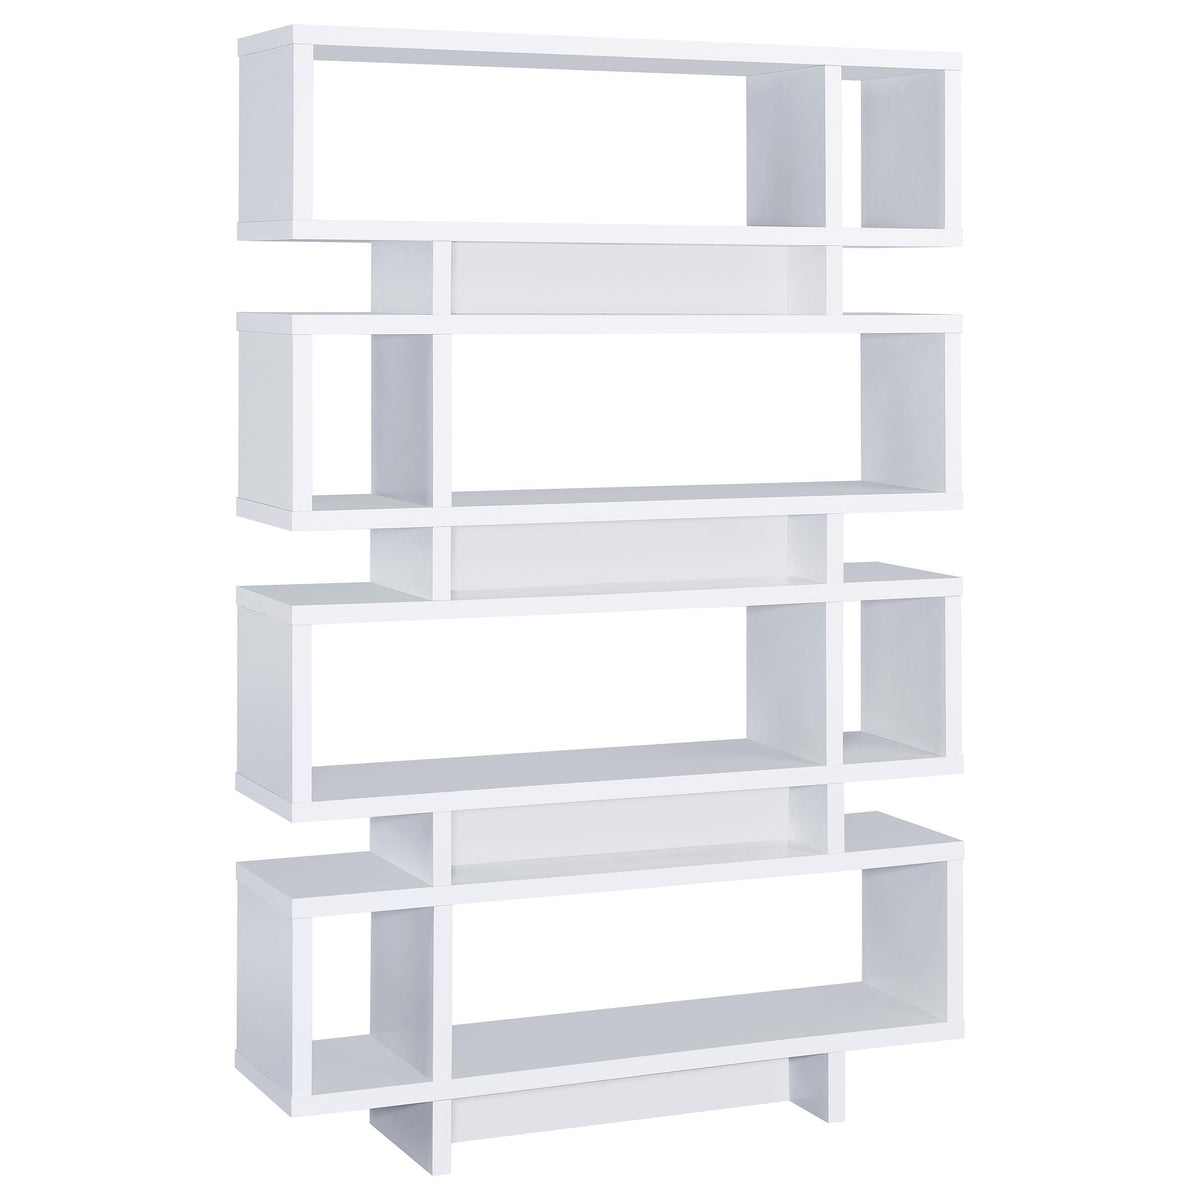 Reid 4-tier Open Back Bookcase White Reid 4-tier Open Back Bookcase White Half Price Furniture